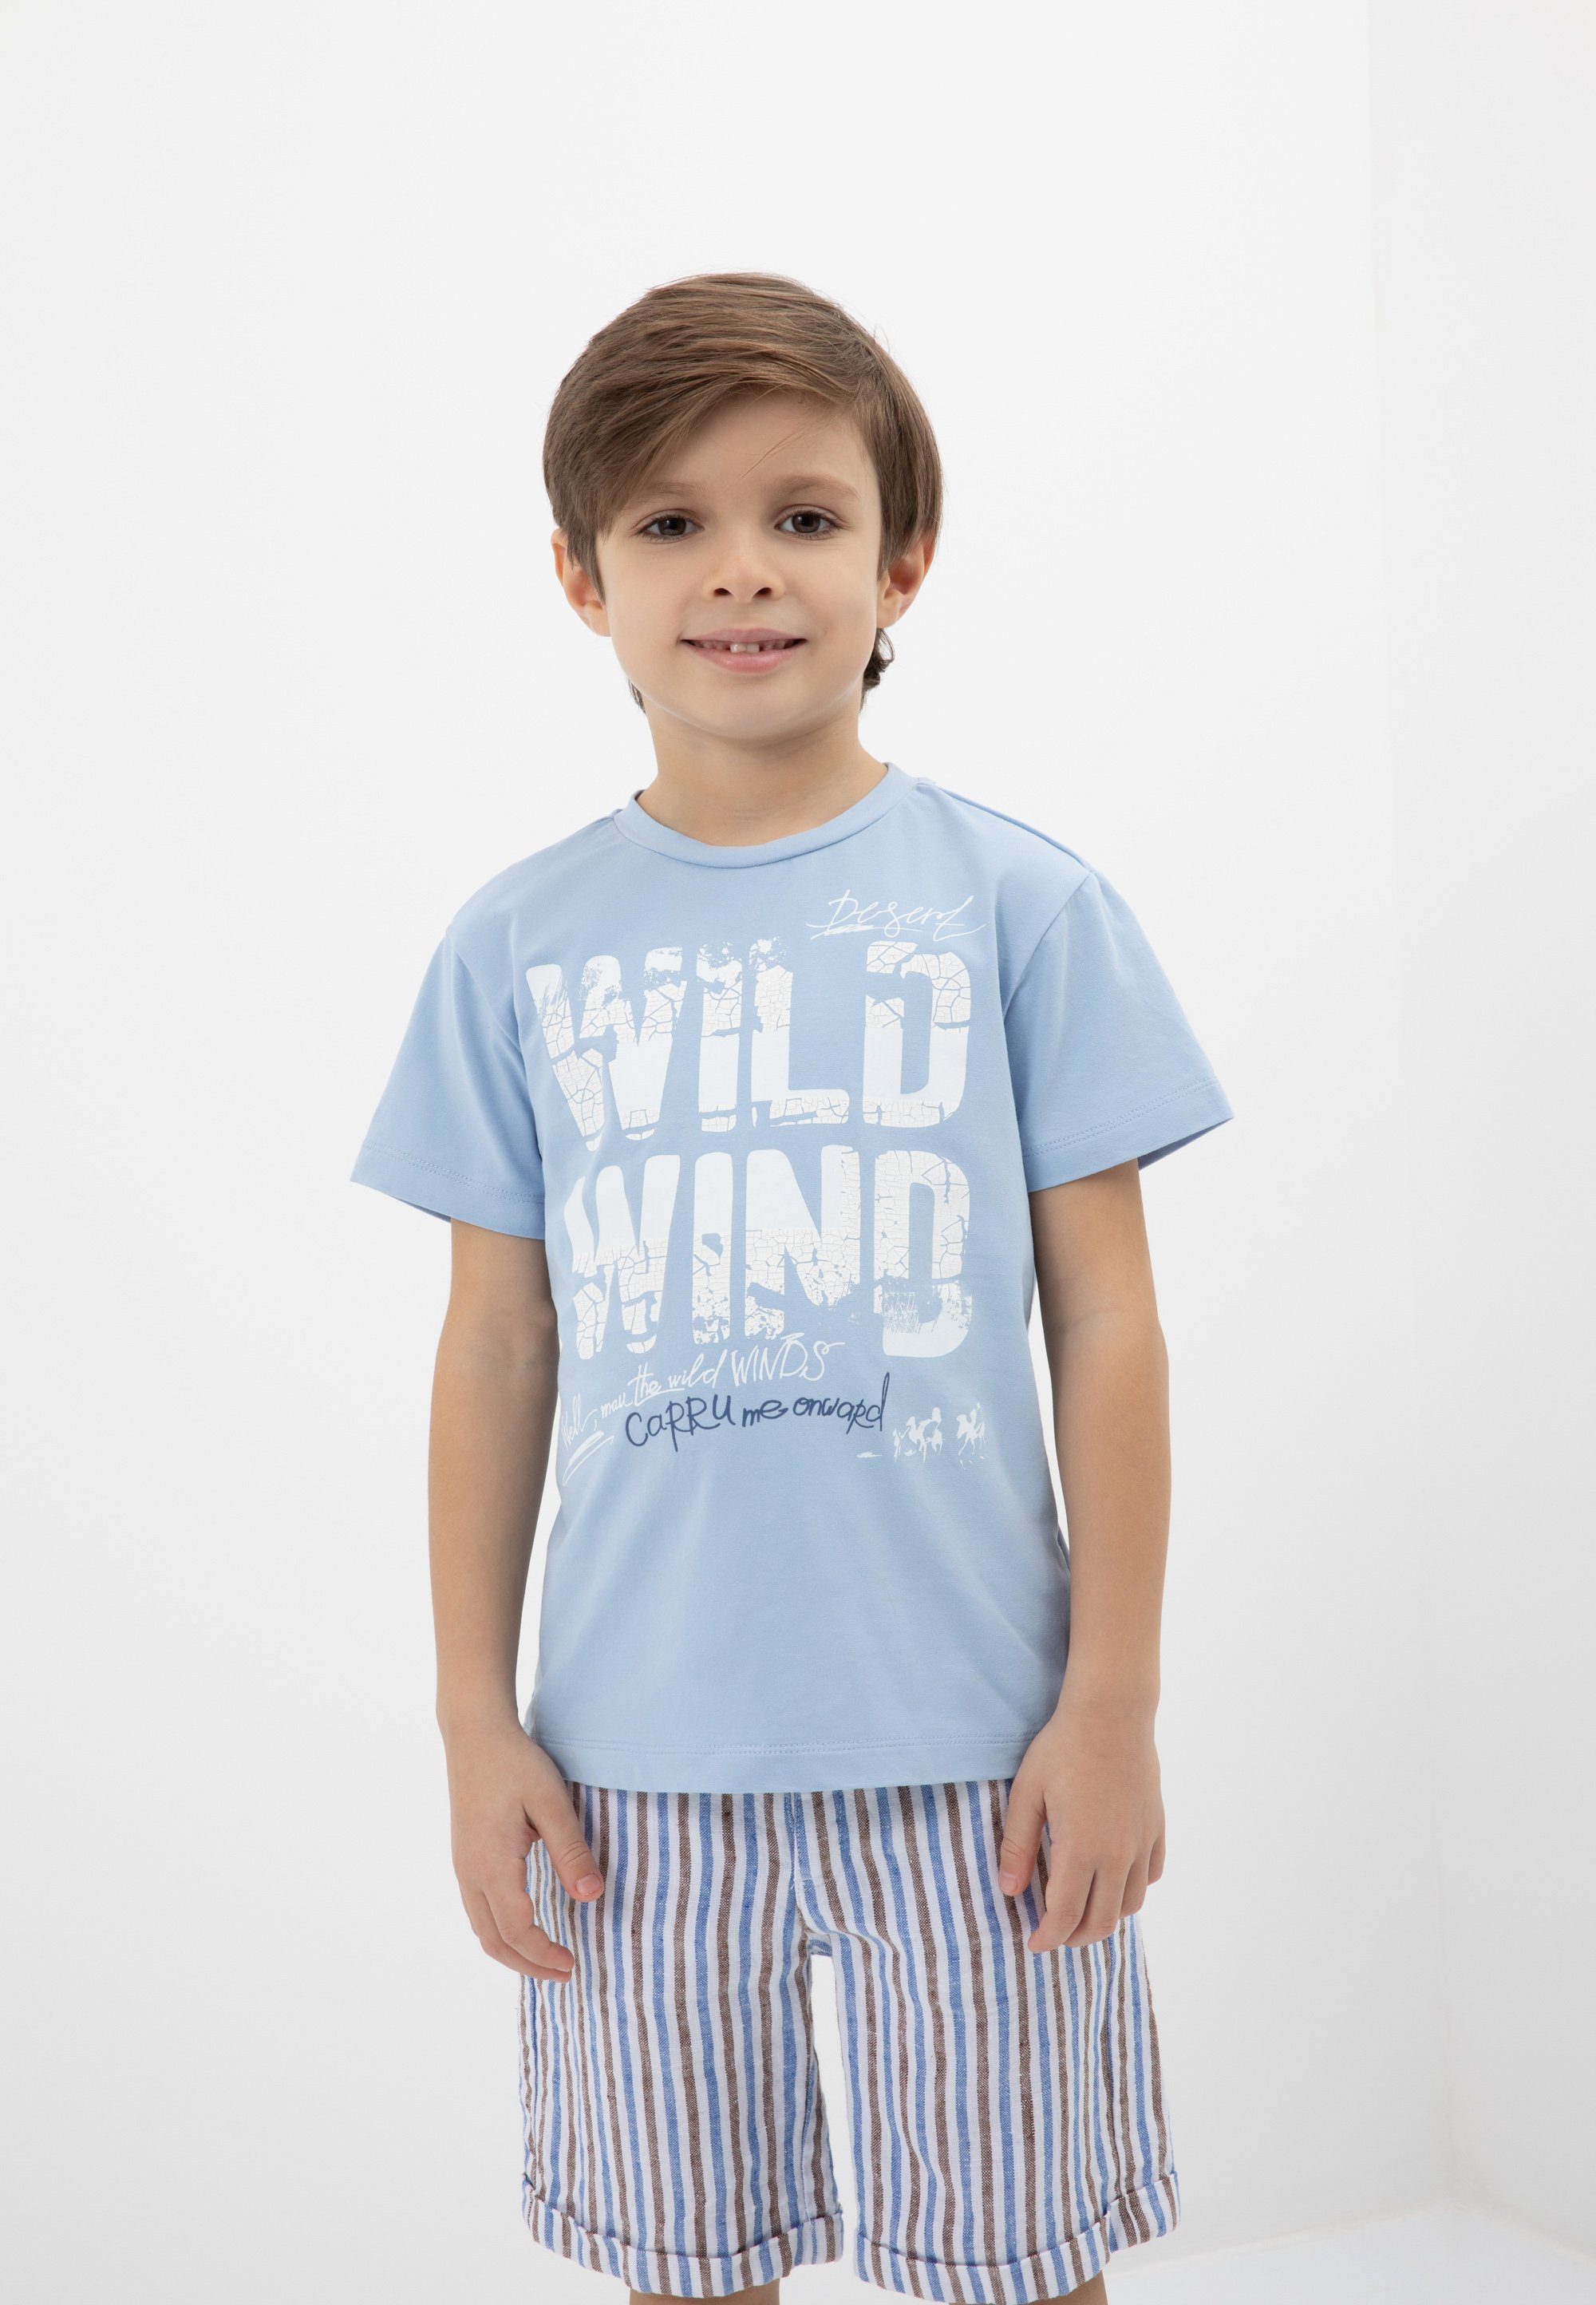 mit Casual-Outfit stilvolle Für T-Shirt Kinder, Gulliver Schriftprint, passt großem jedem zu